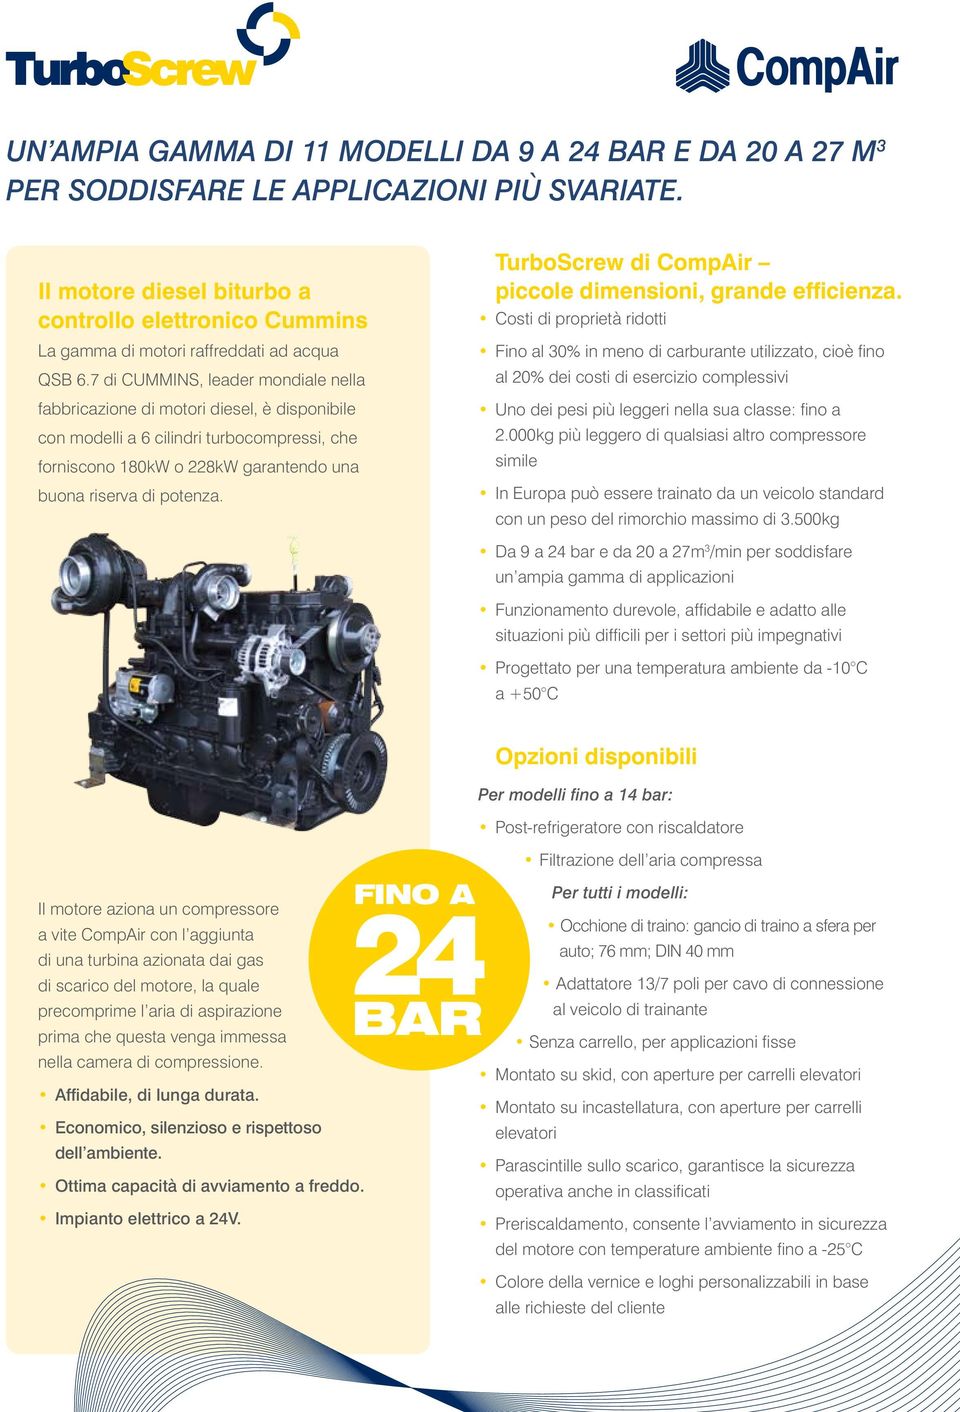 7 di CUMMINS, leader mondiale nella fabbricazione di motori diesel, è disponibile con modelli a 6 cilindri turbocompressi, che forniscono 180kW o 228kW garantendo una buona riserva di potenza.